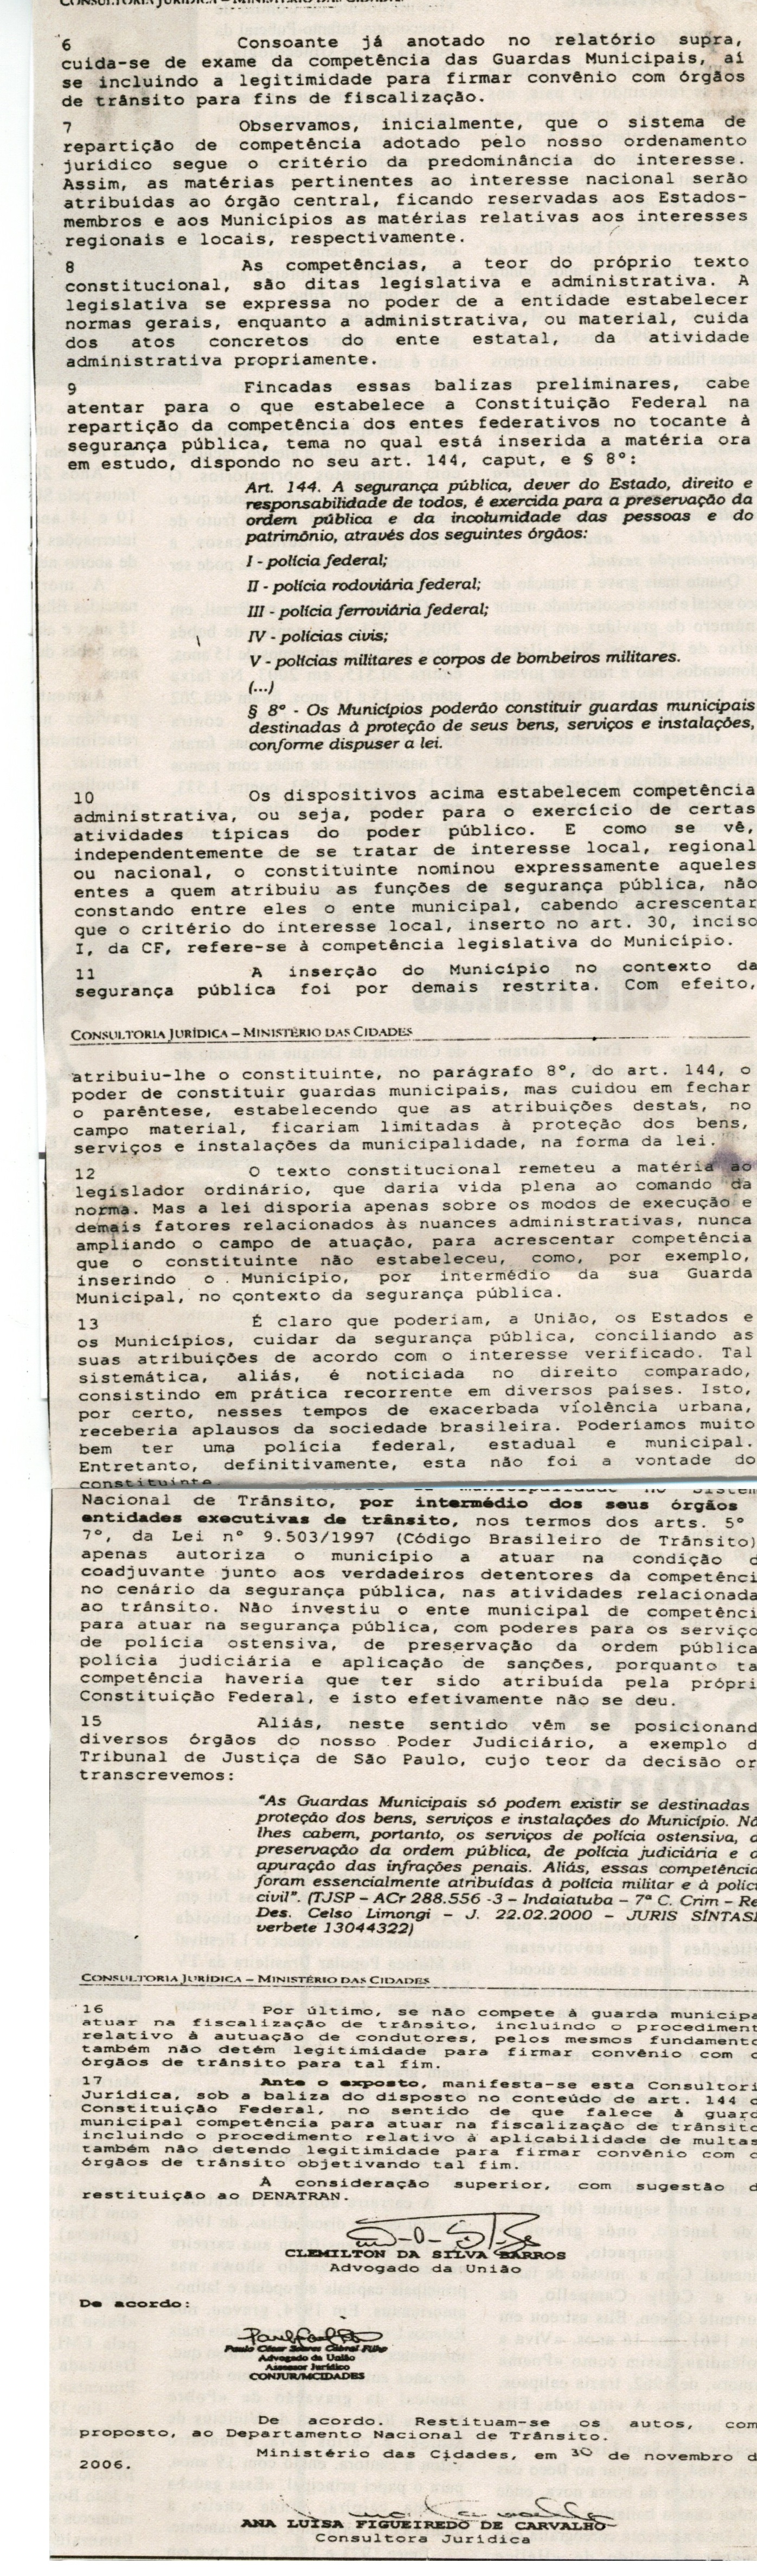 Consultoria Jurídica - Ministério das Cidades. Jornal Nova Gazeta, 20 jan. 2007, 447ª ed., p. 05. 